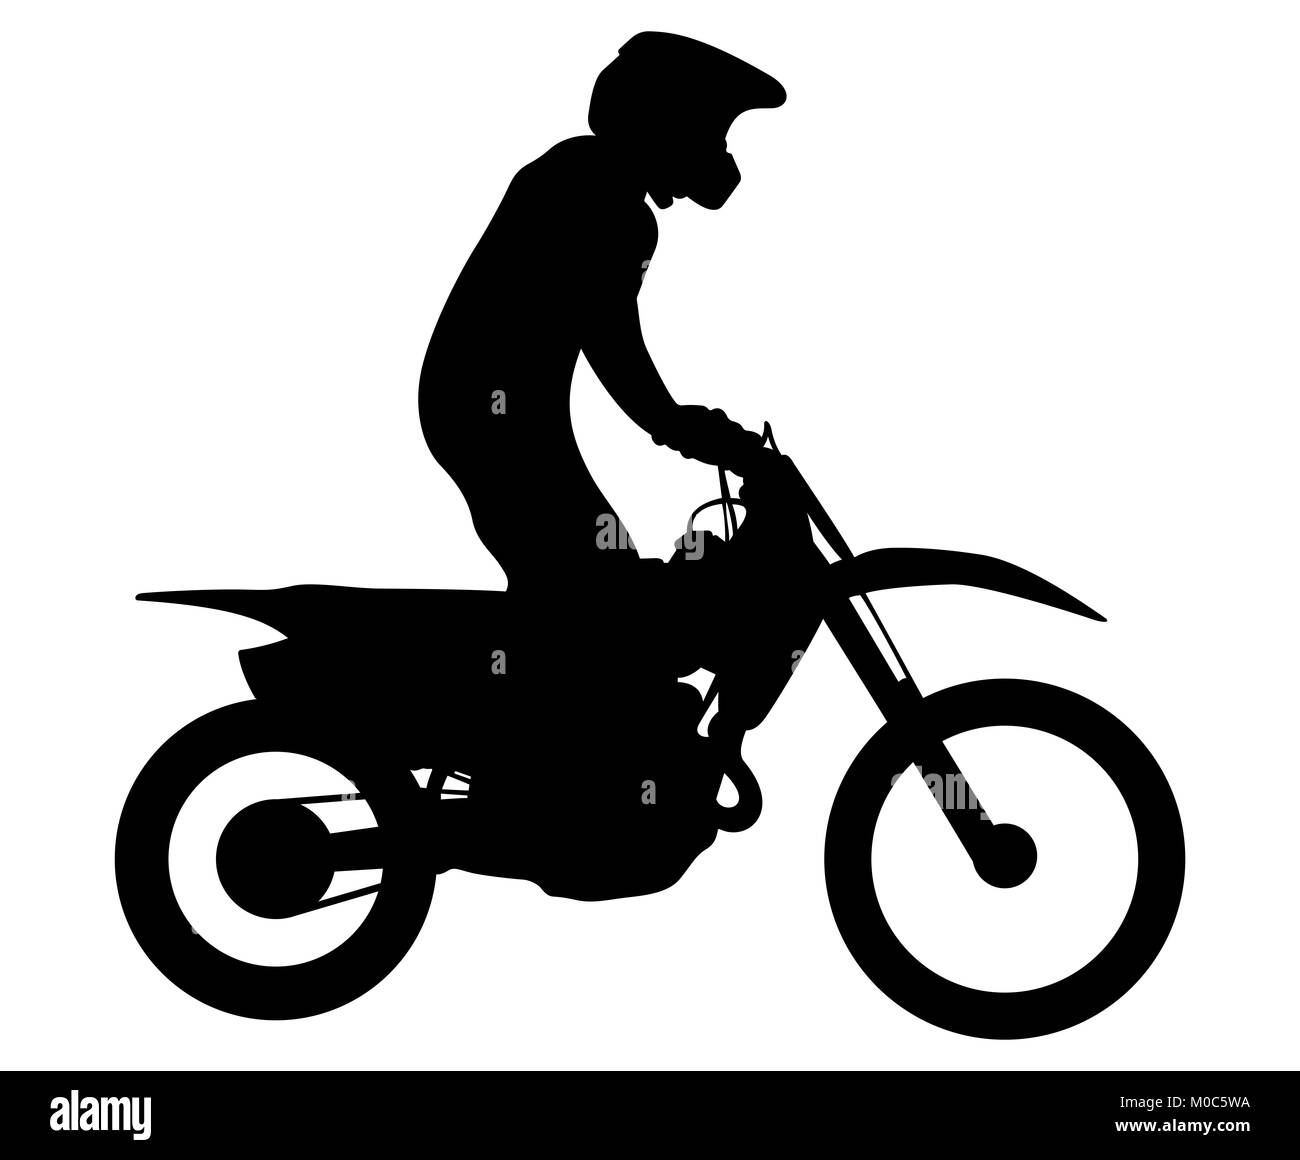 enduro athlete on bike rides motocross black silhouette Stock Photo